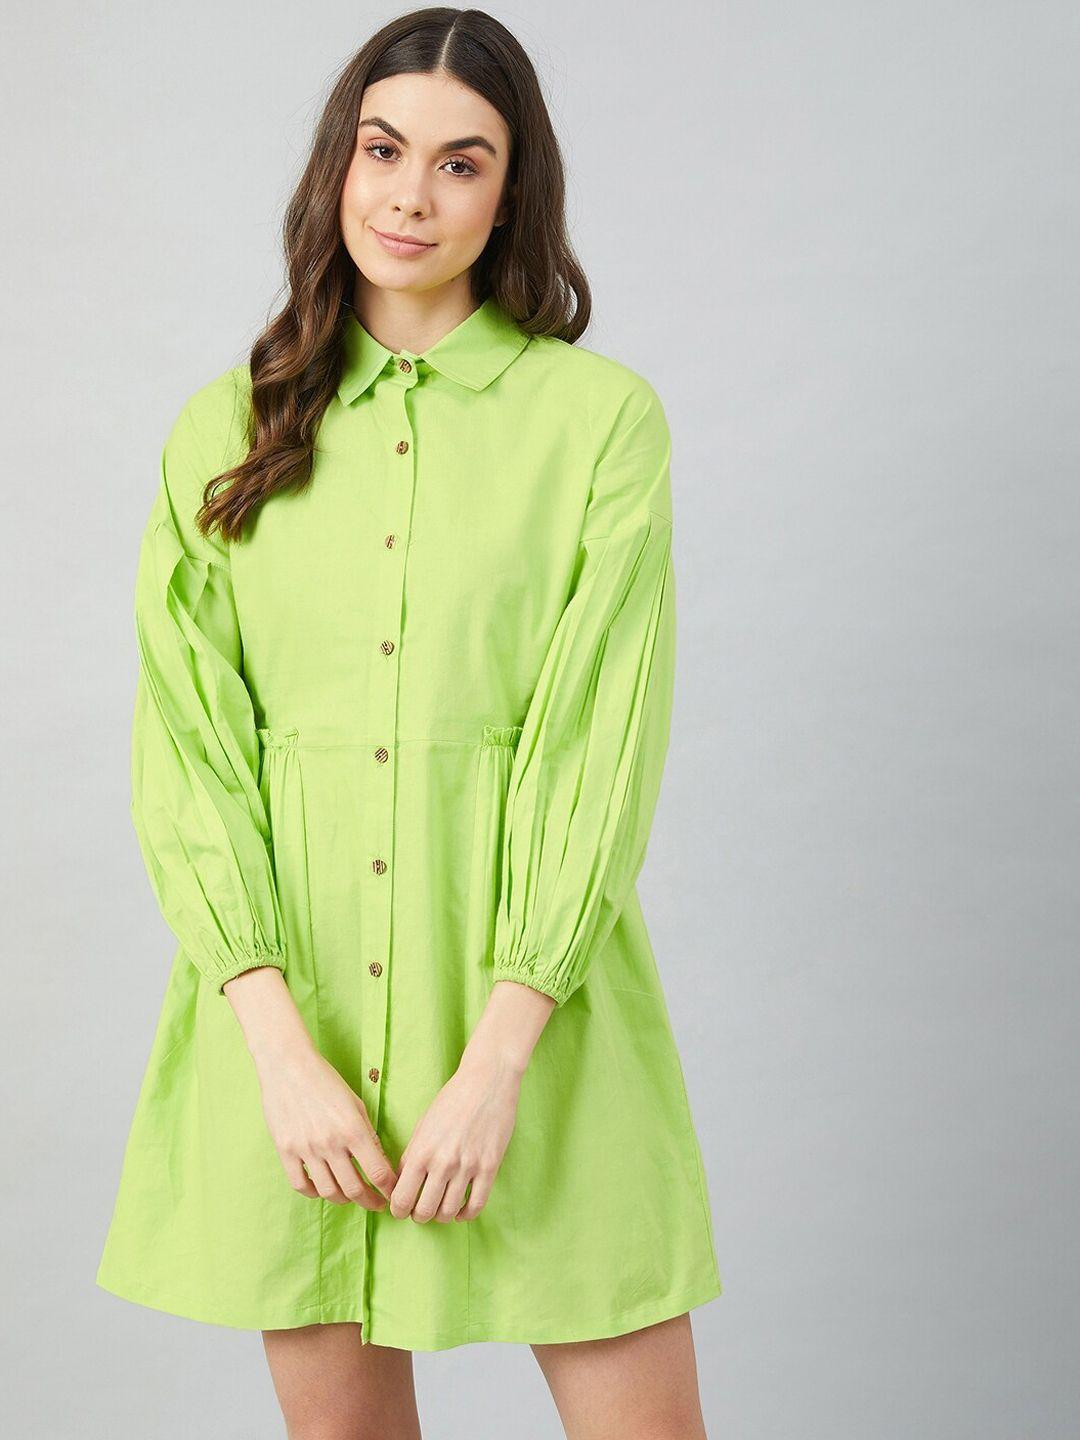 athena-women-fluorescent-green-cotton-shirt-dress